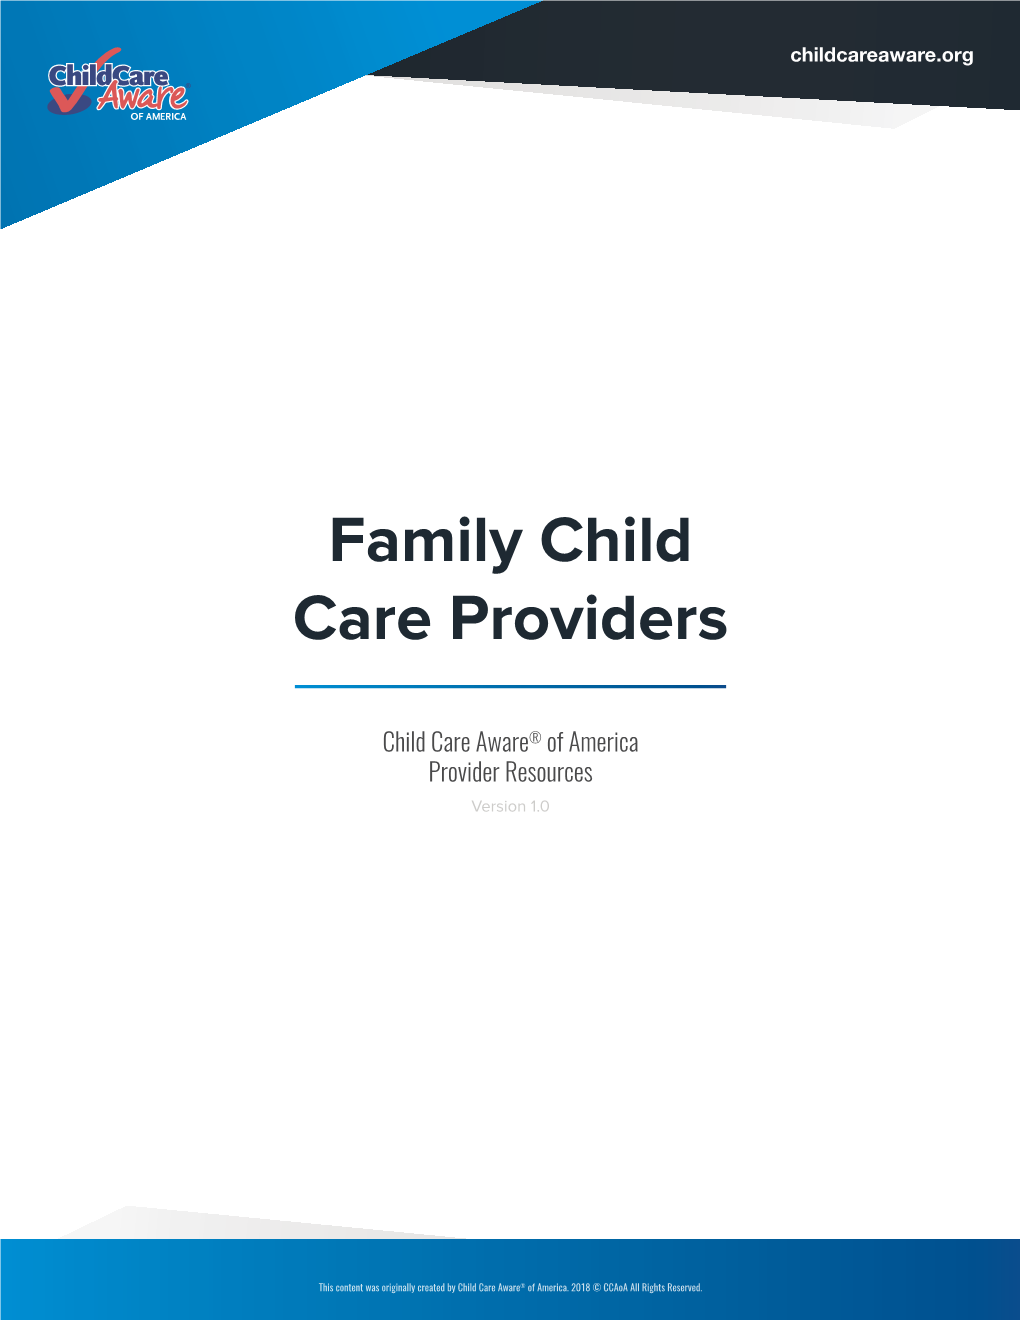 Family Child Care Provider Resources E-Book